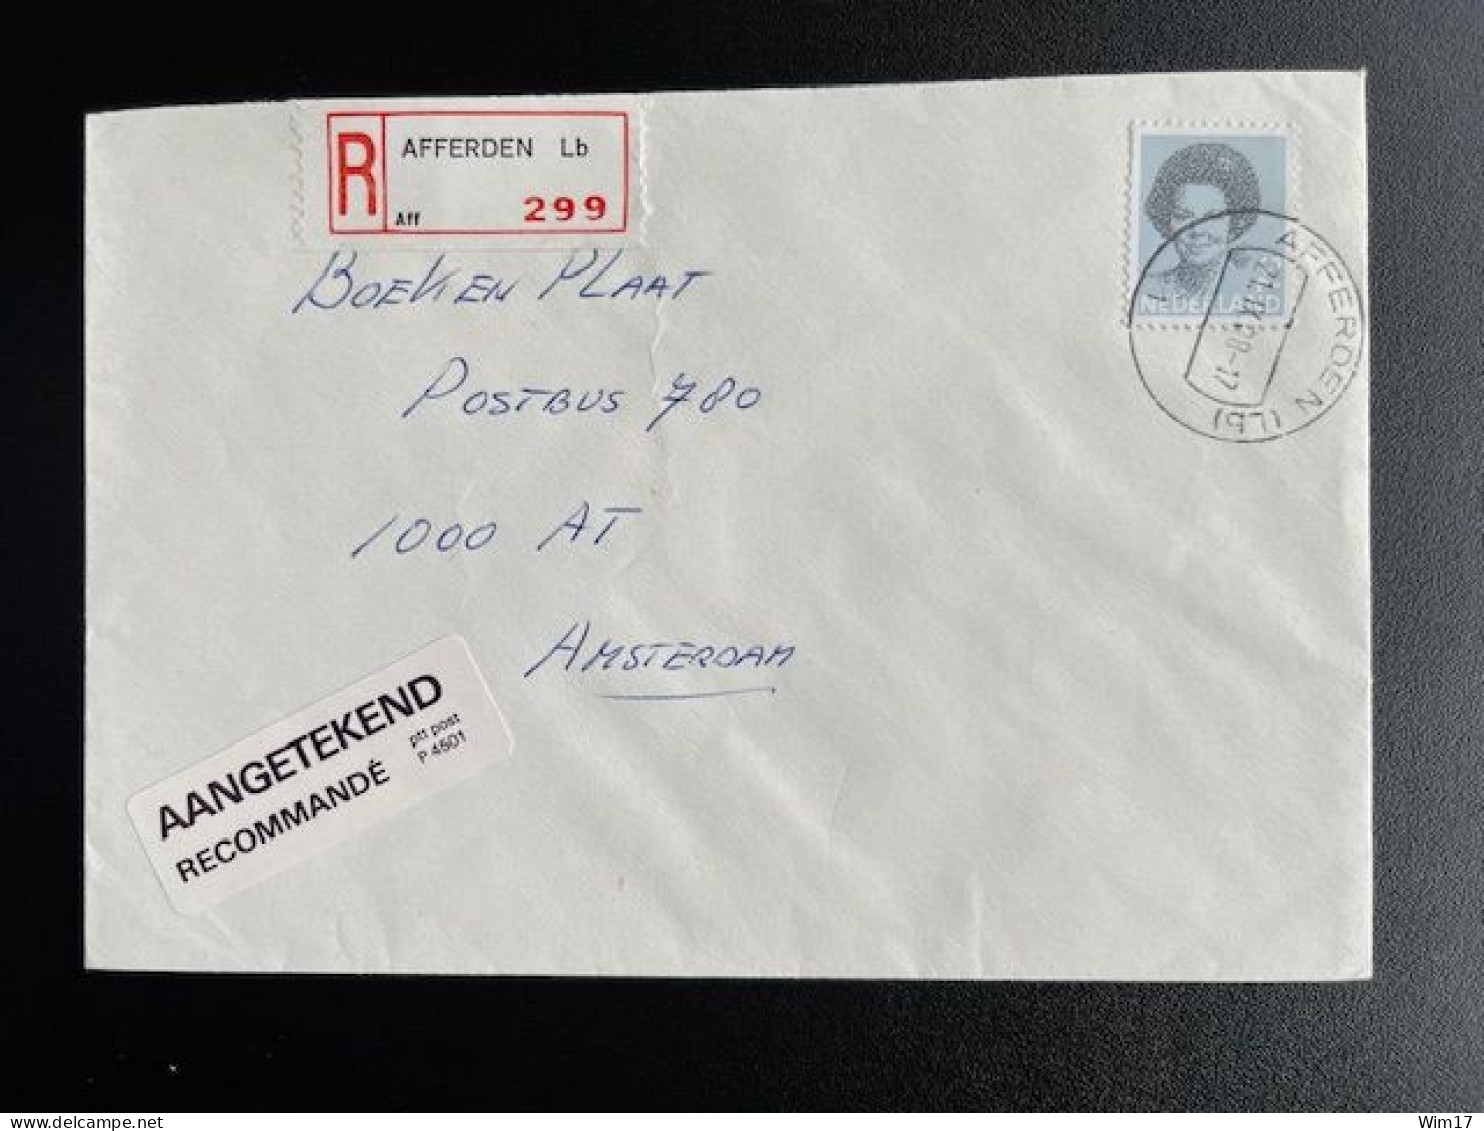 NETHERLANDS 1988 REGISTERED LETTER AFFERDEN (LB) TO AMSTERDAM 21-09-1988 NEDERLAND AANGETEKEND - Storia Postale